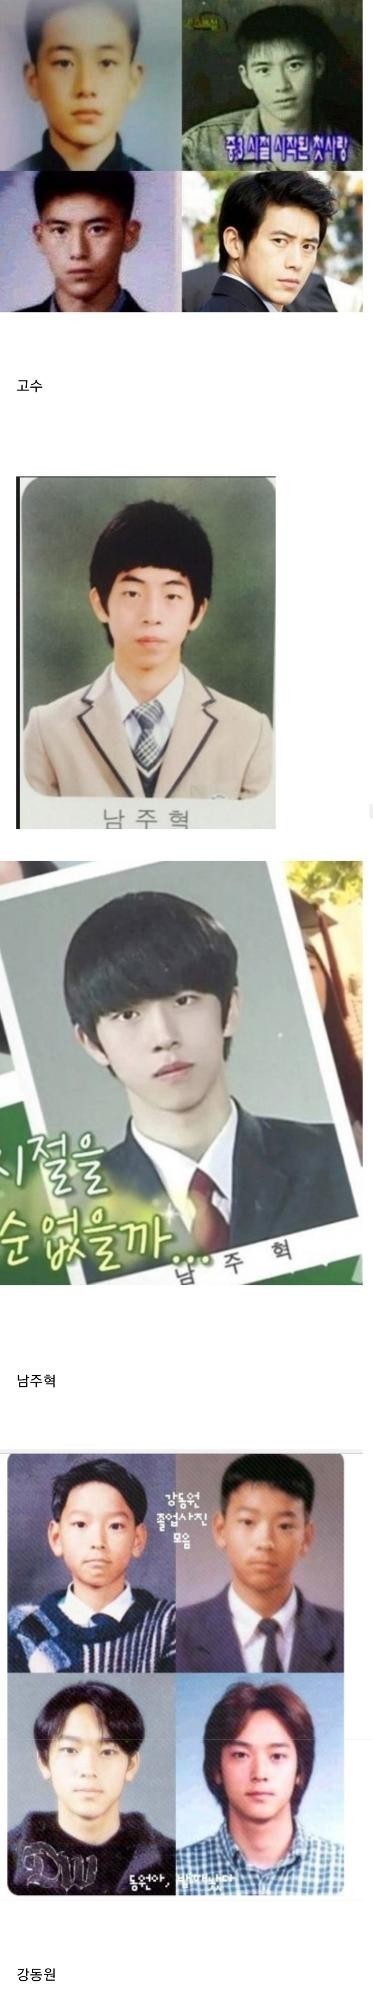 nokbeon.net-한국 남자배우들 졸업사진.jpg-7번 이미지